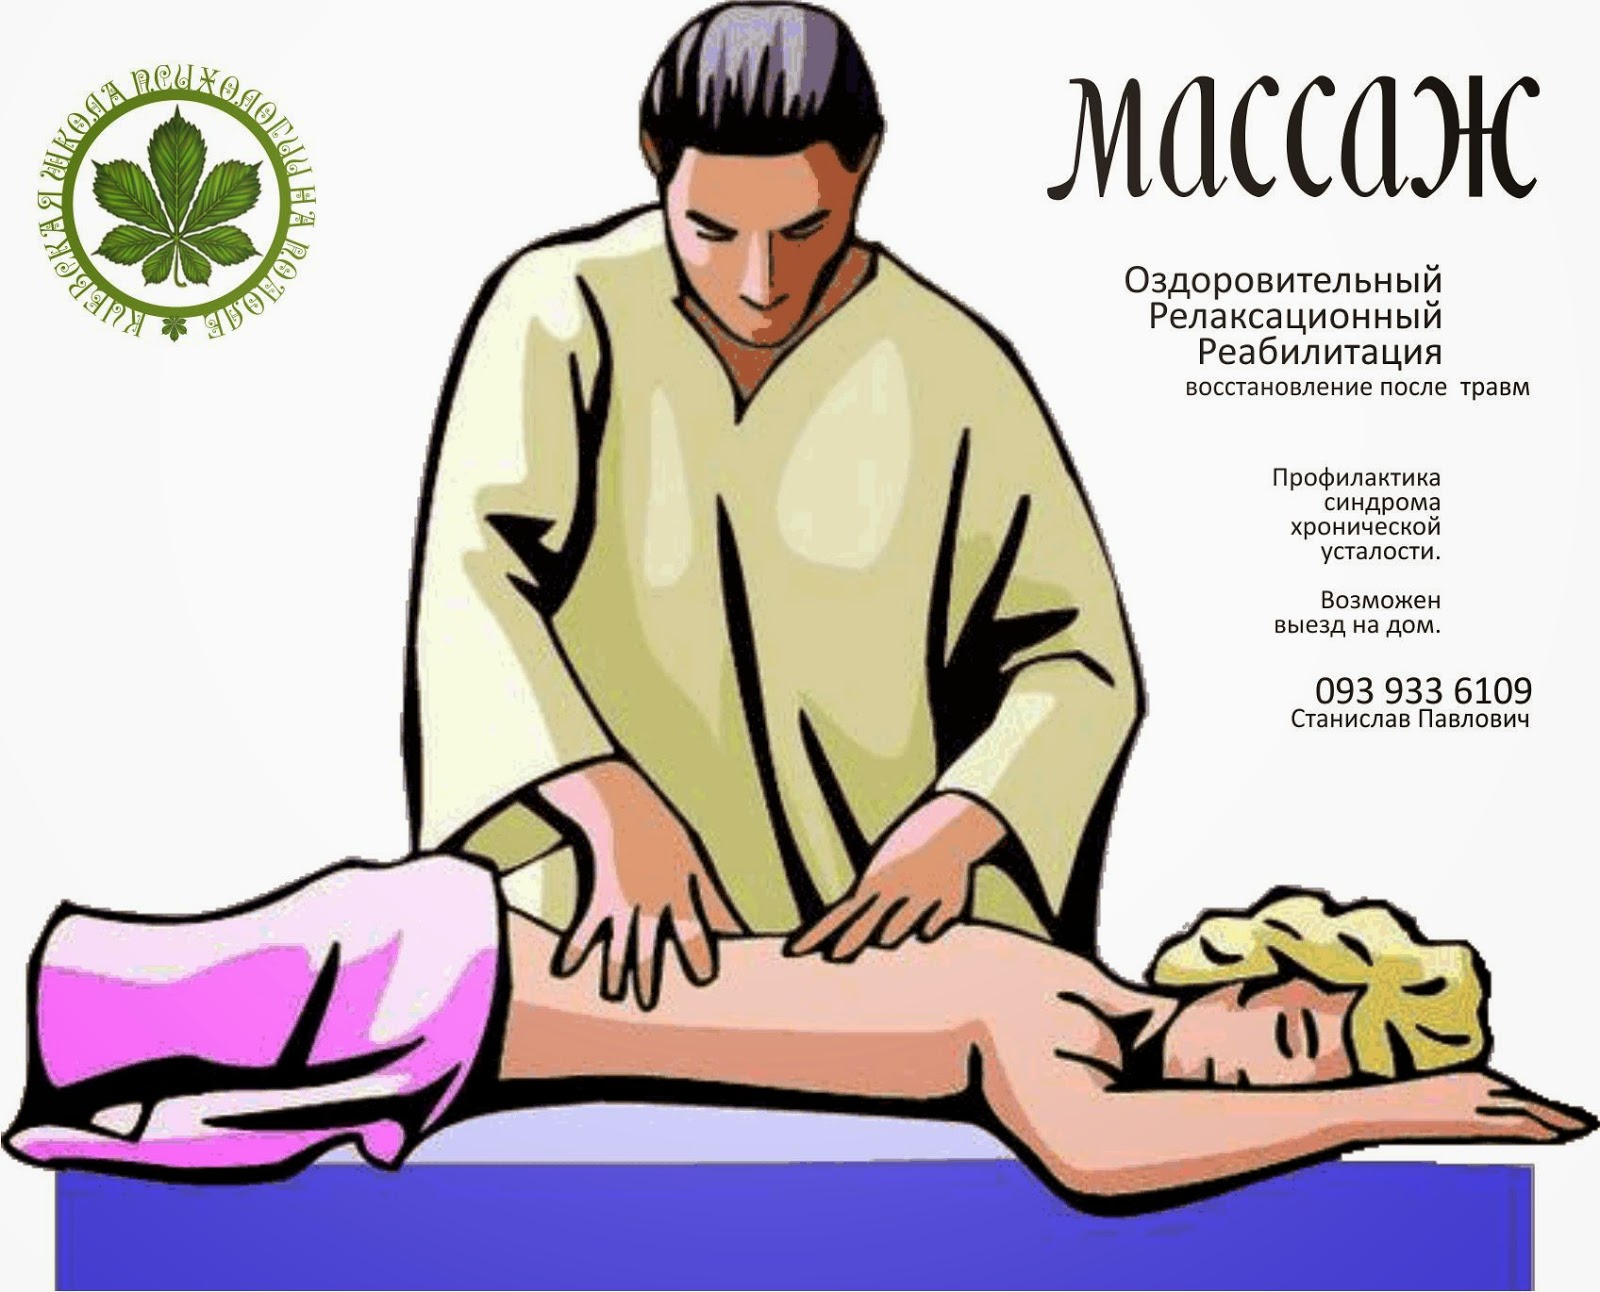 Massage master. Массаж иллюстрация. Массаж нарисованный. Профессия массажист. Массаж изображение.